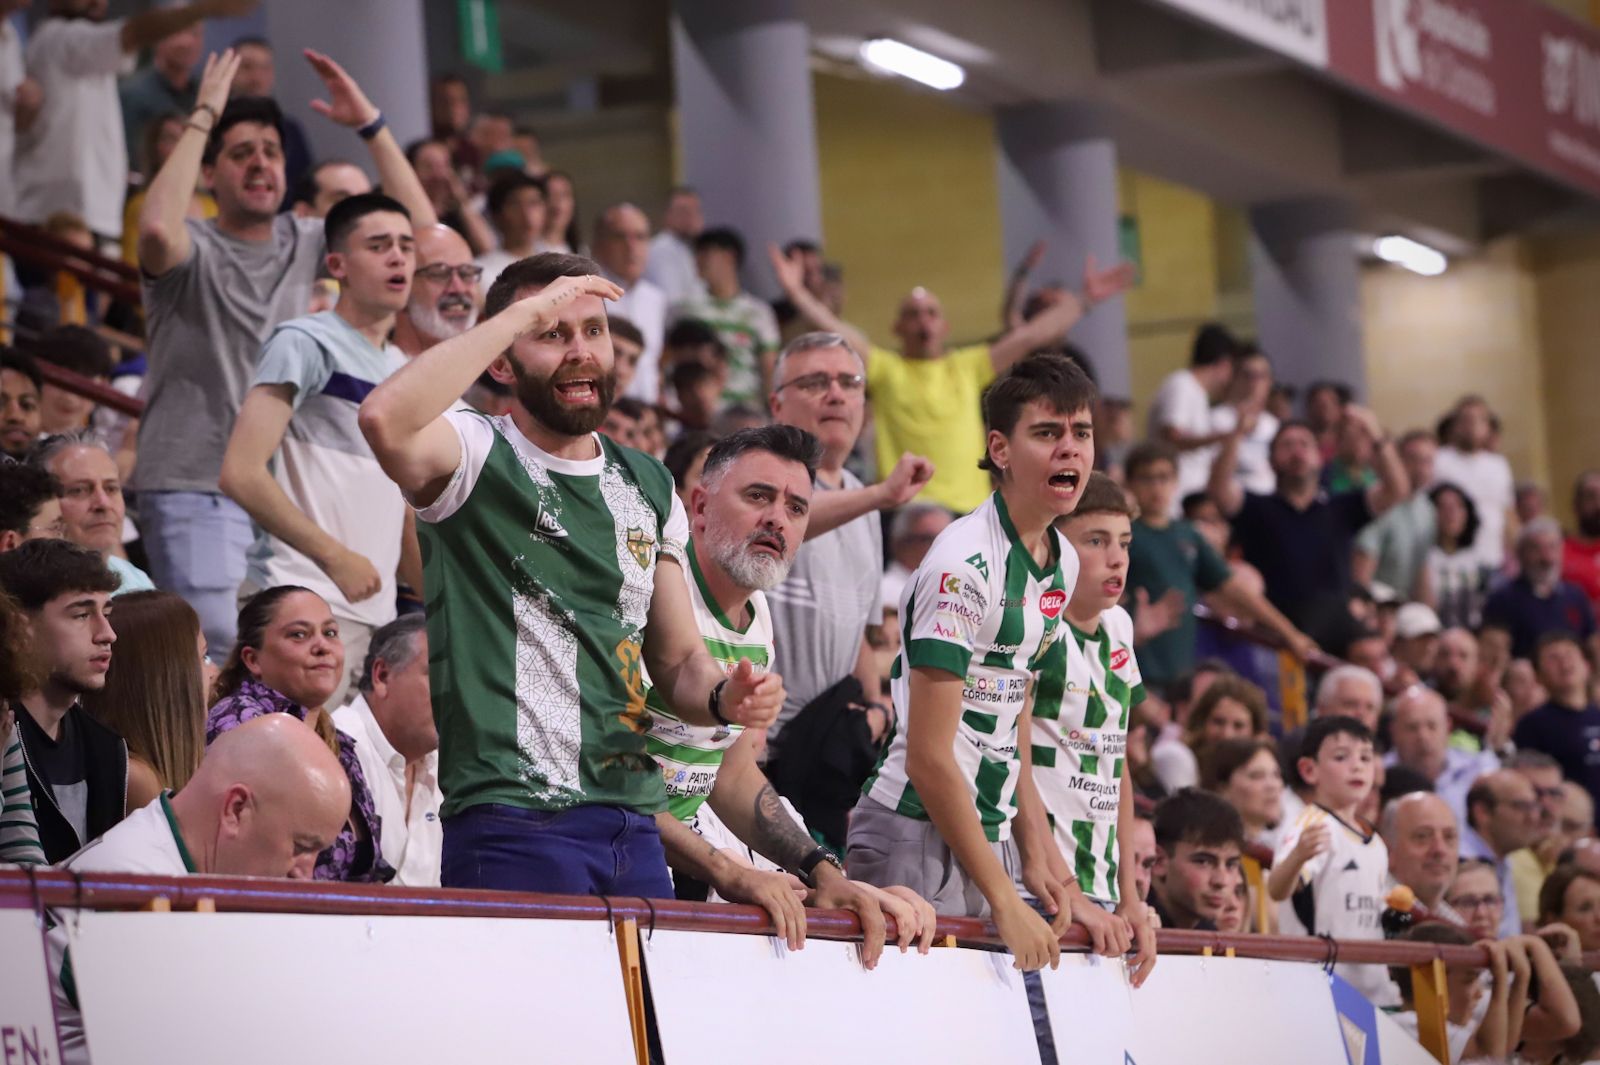 Córdoba Futsal-Jimbee Cartagena: el partido de Vista Alegre en imágenes